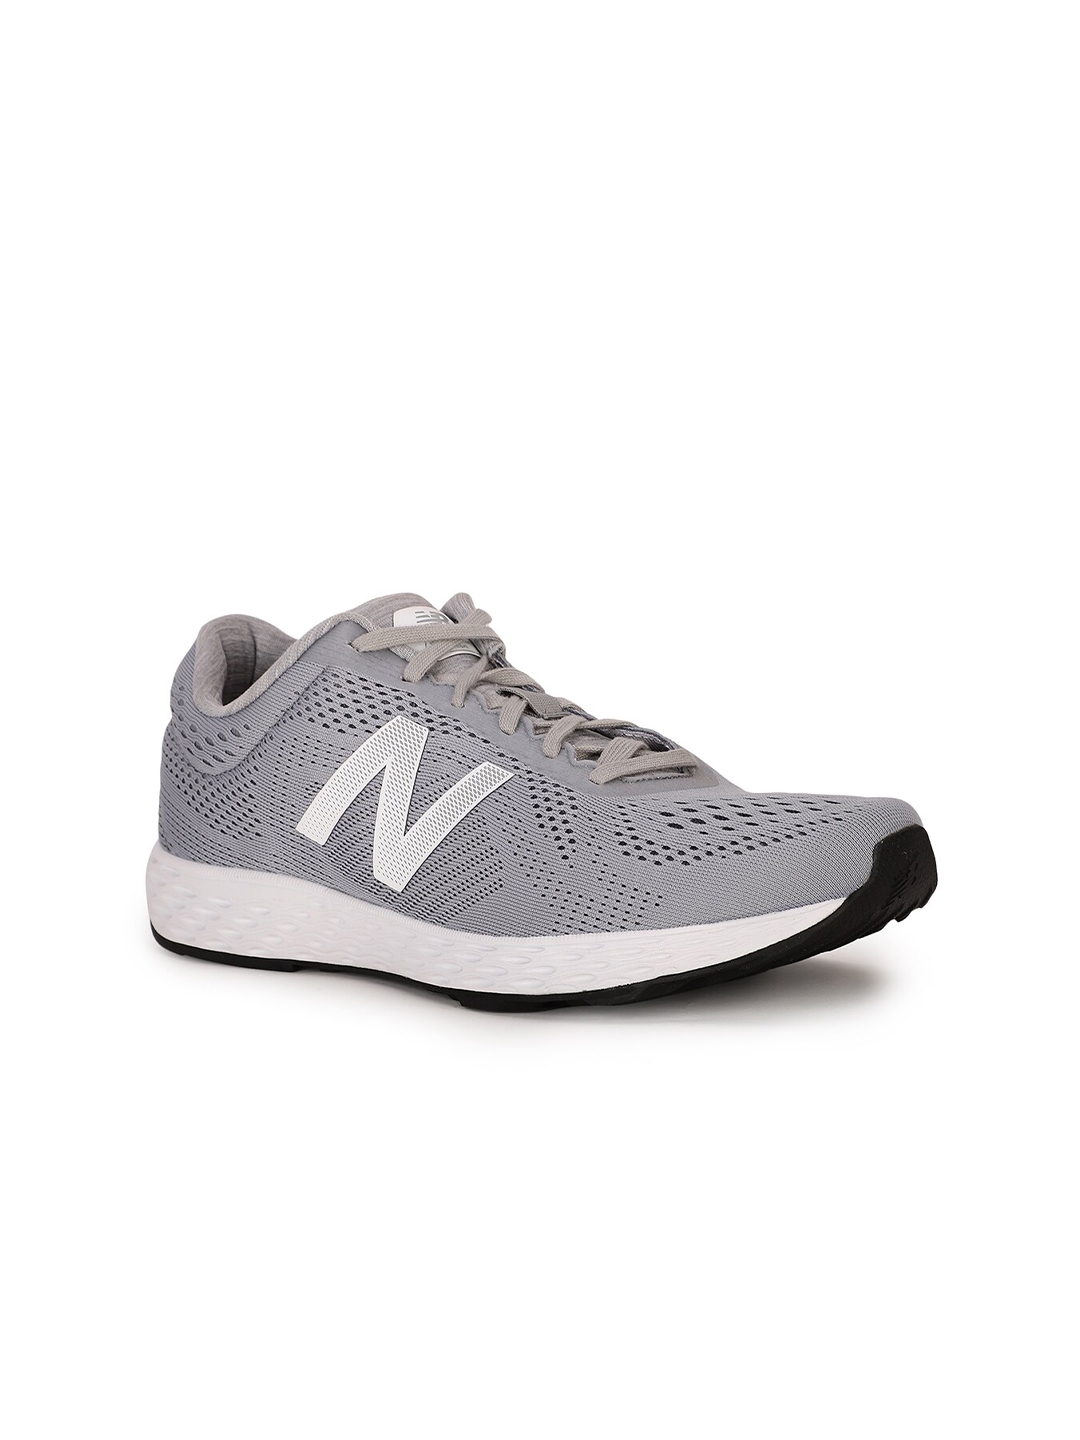 Buy New Balance Women Grey Mesh Running Shoes - Sports Shoes for Women ...